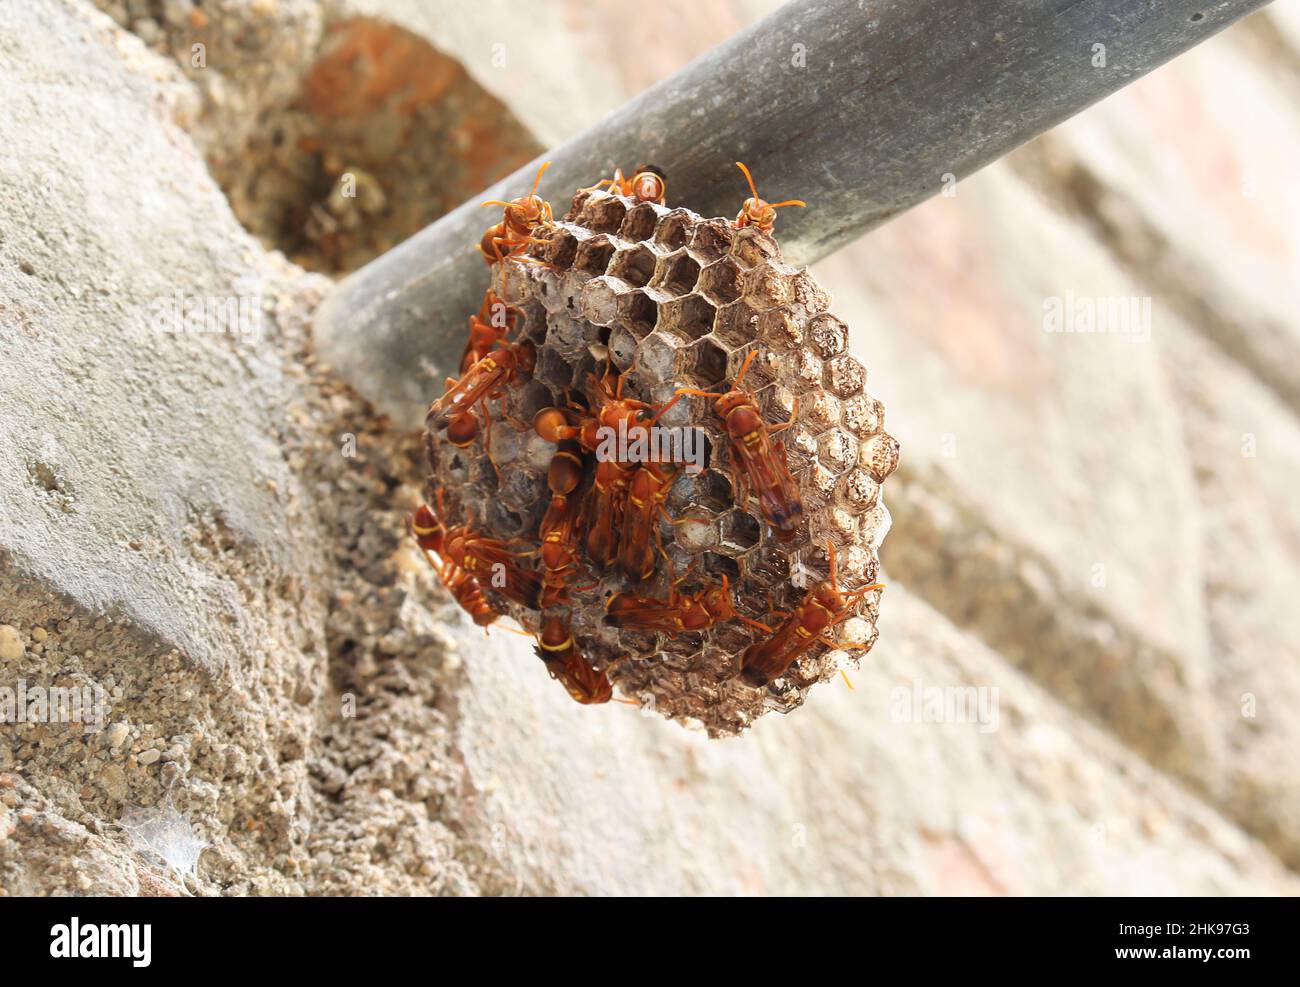 Wasps in piedi lì nel nido della vespa. La vespa di carta gialla (Ropalidia marginata) con sfondo scuro Foto Stock